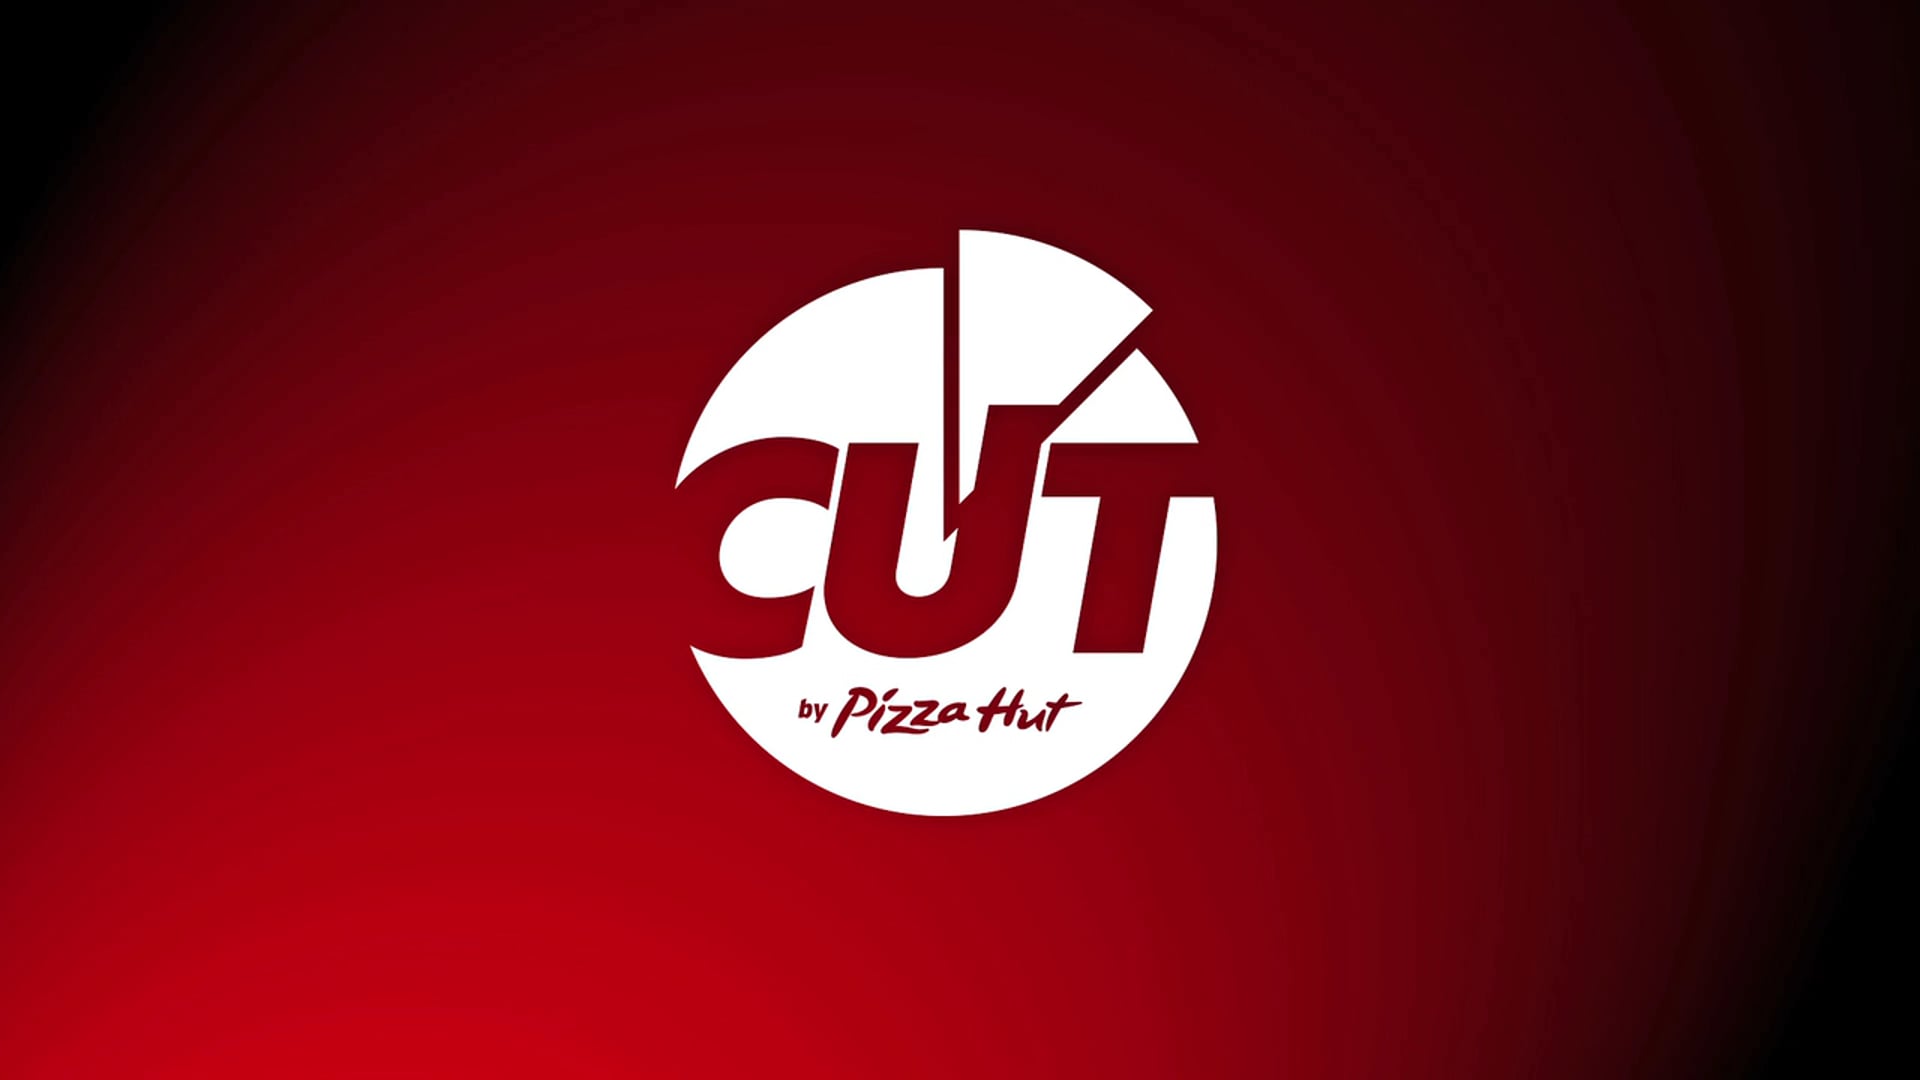 Pizza Hut - webserie "Cut" - 9 épisodes